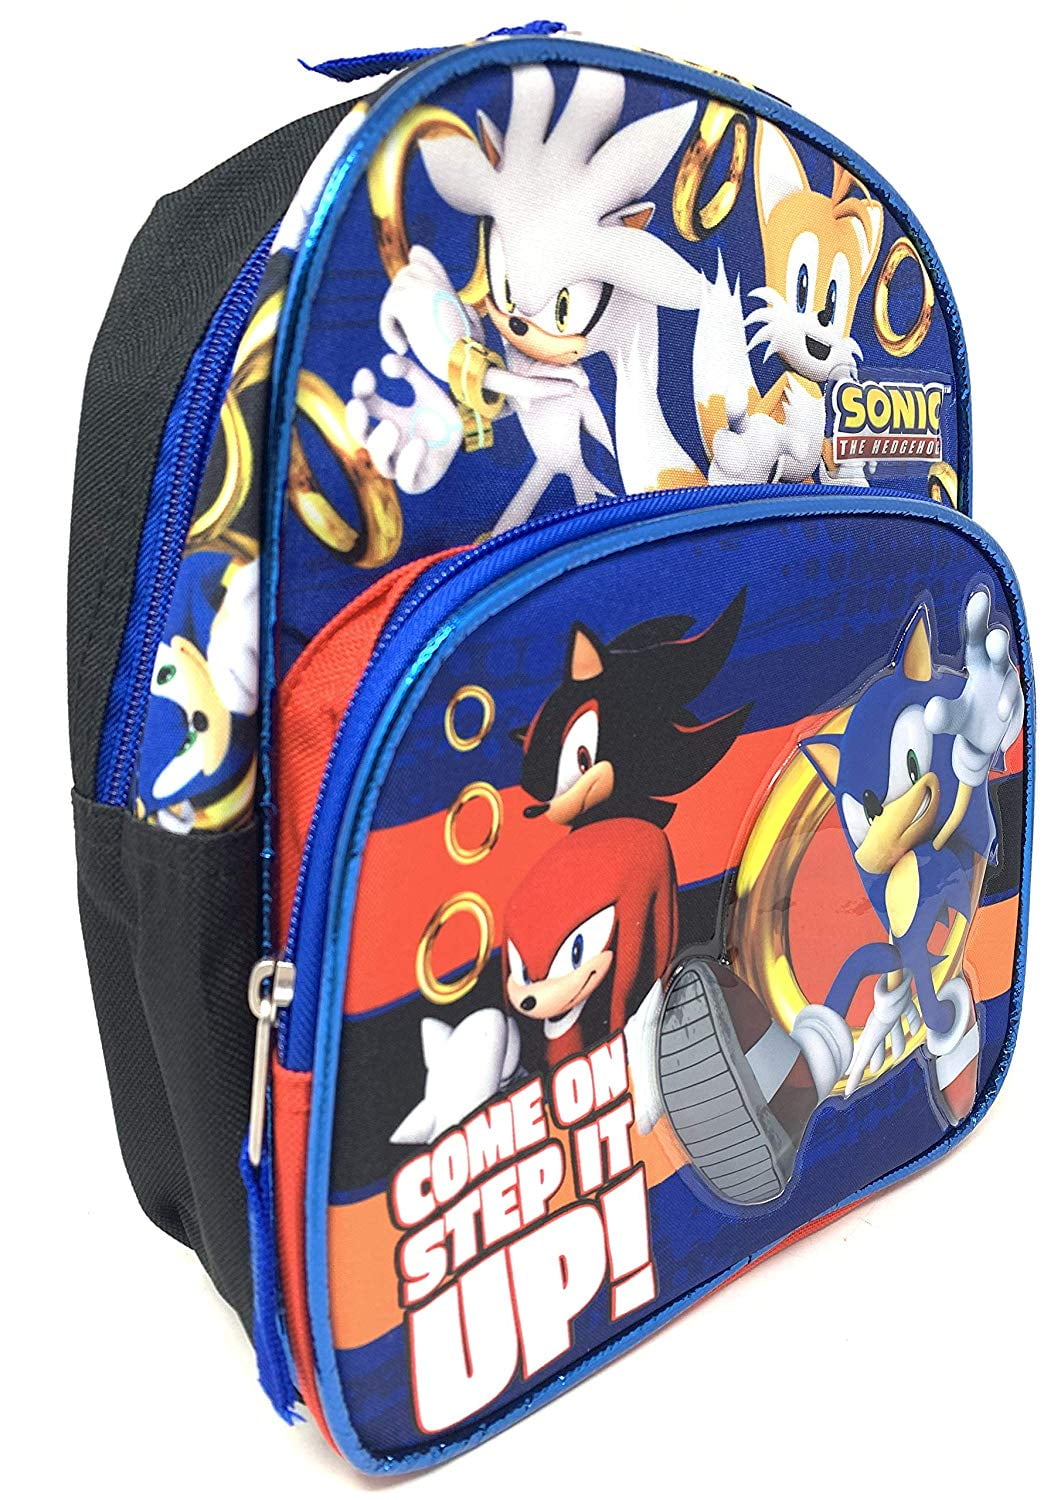 Sonic The Hedgehog 10" Mini Backpack